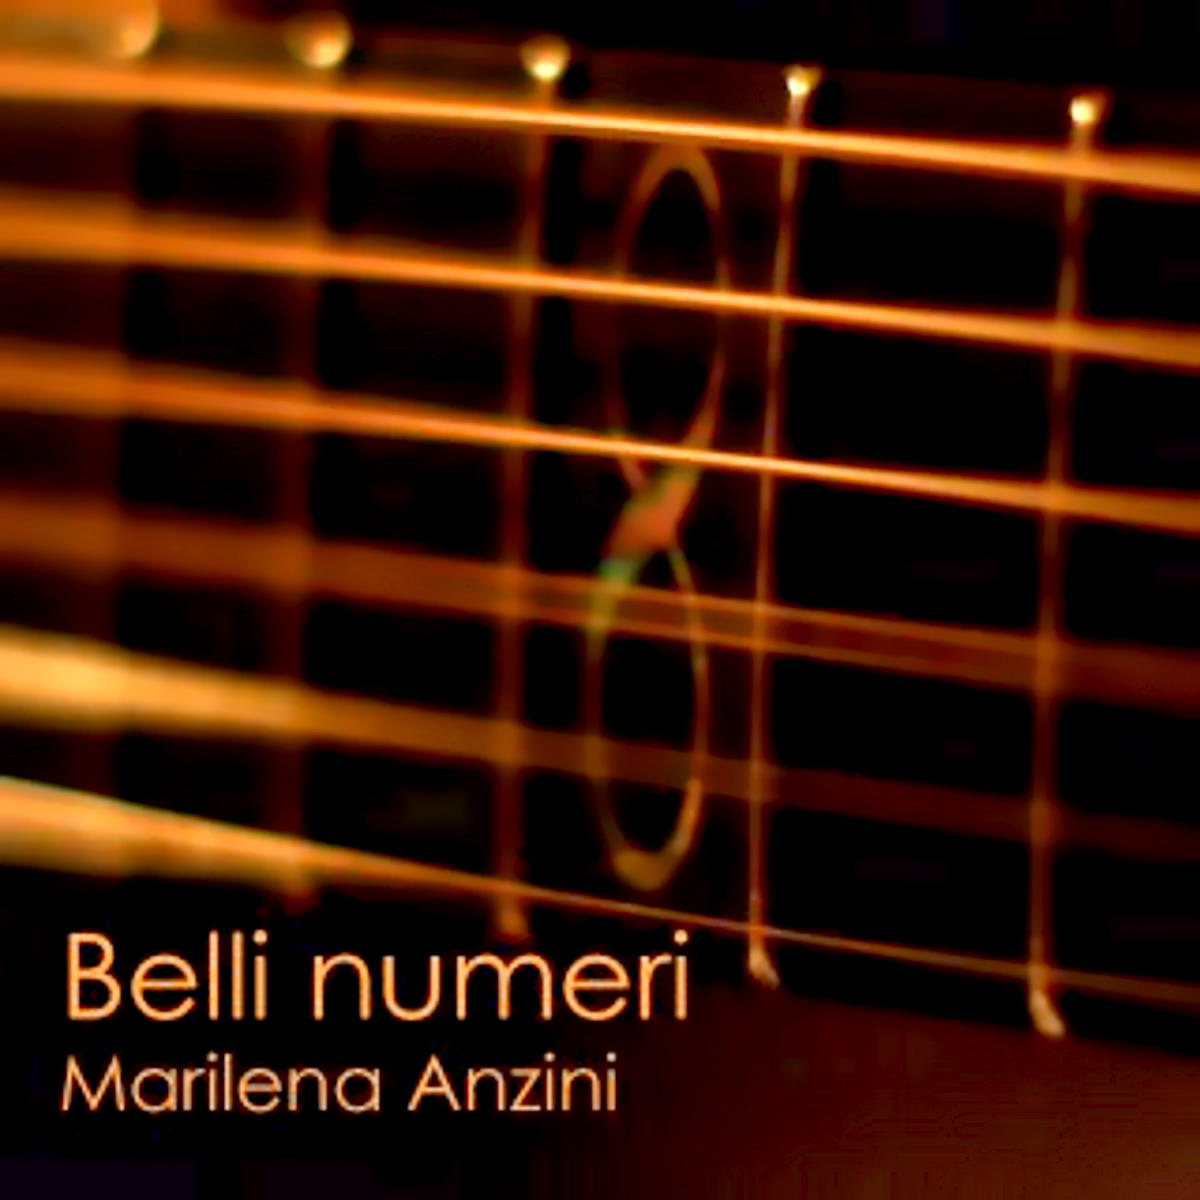 MARILENA ANZINI, “Belli numeri” è il nuovo singolo incentrato sul valore della voce della cantante e performer lombarda